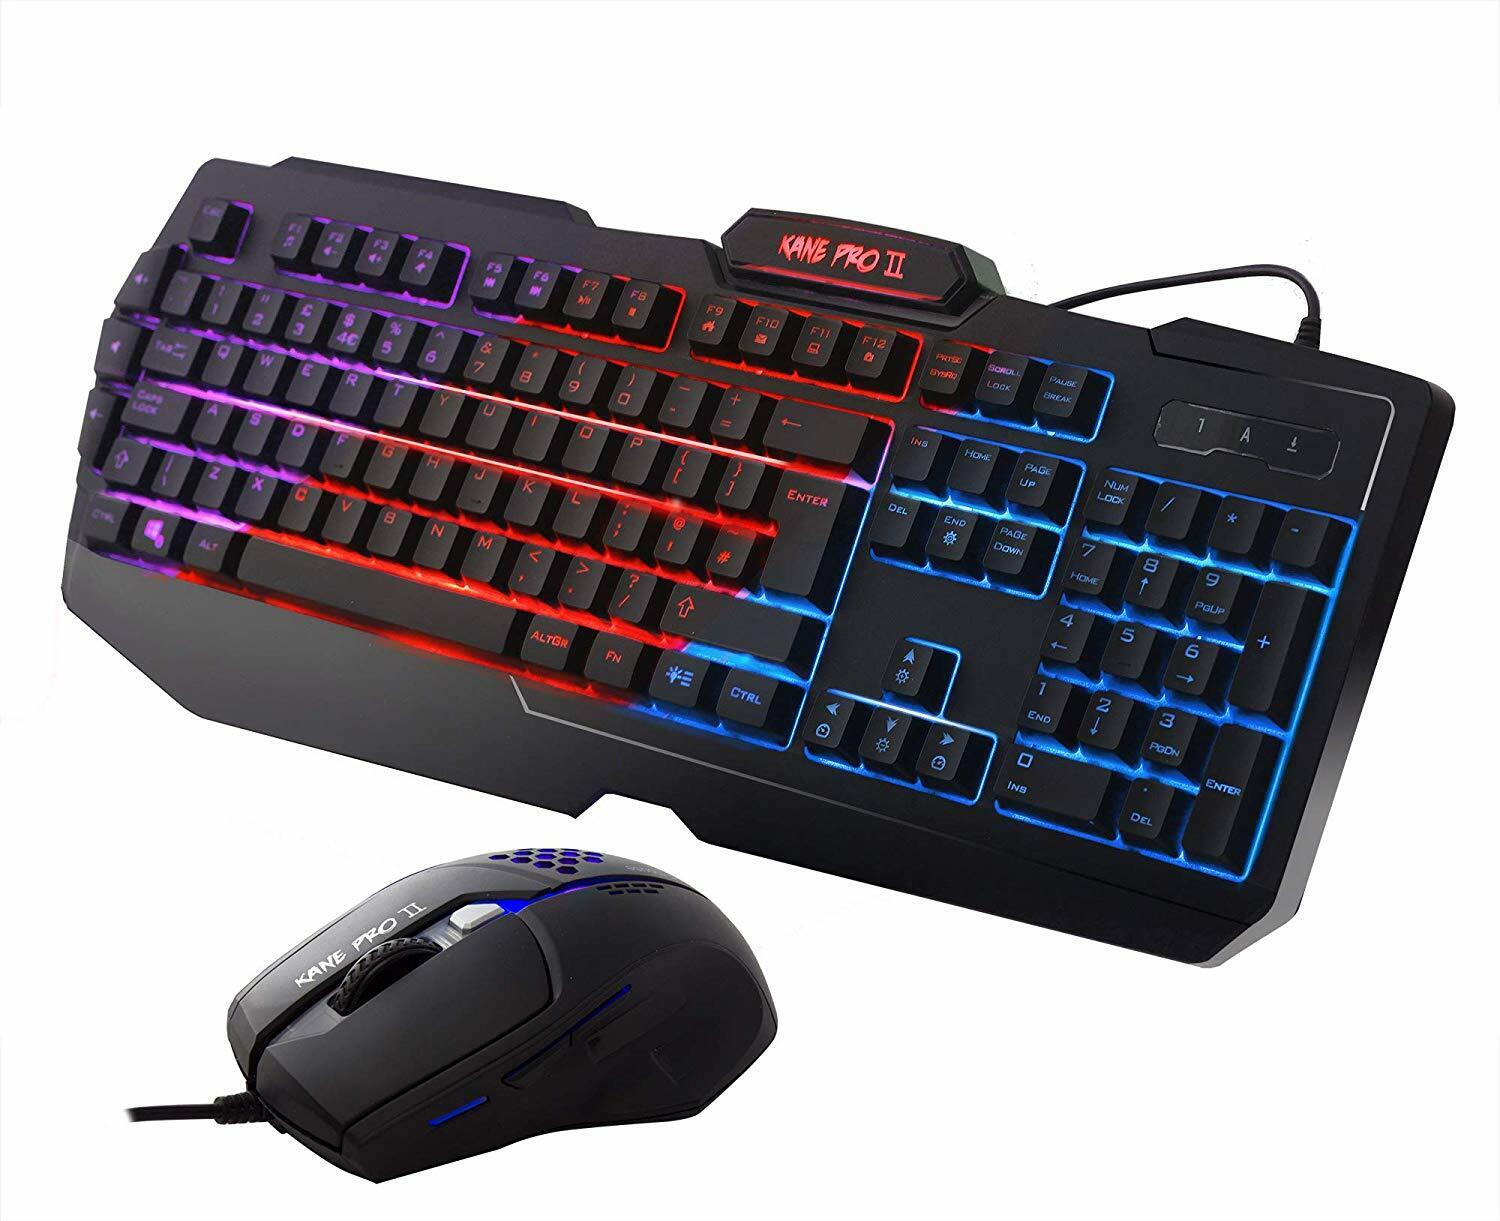 Sumvision Nemesis Kane Pro II LED Multi-Colour Backlit Gaming Keyboard + Mouse Set